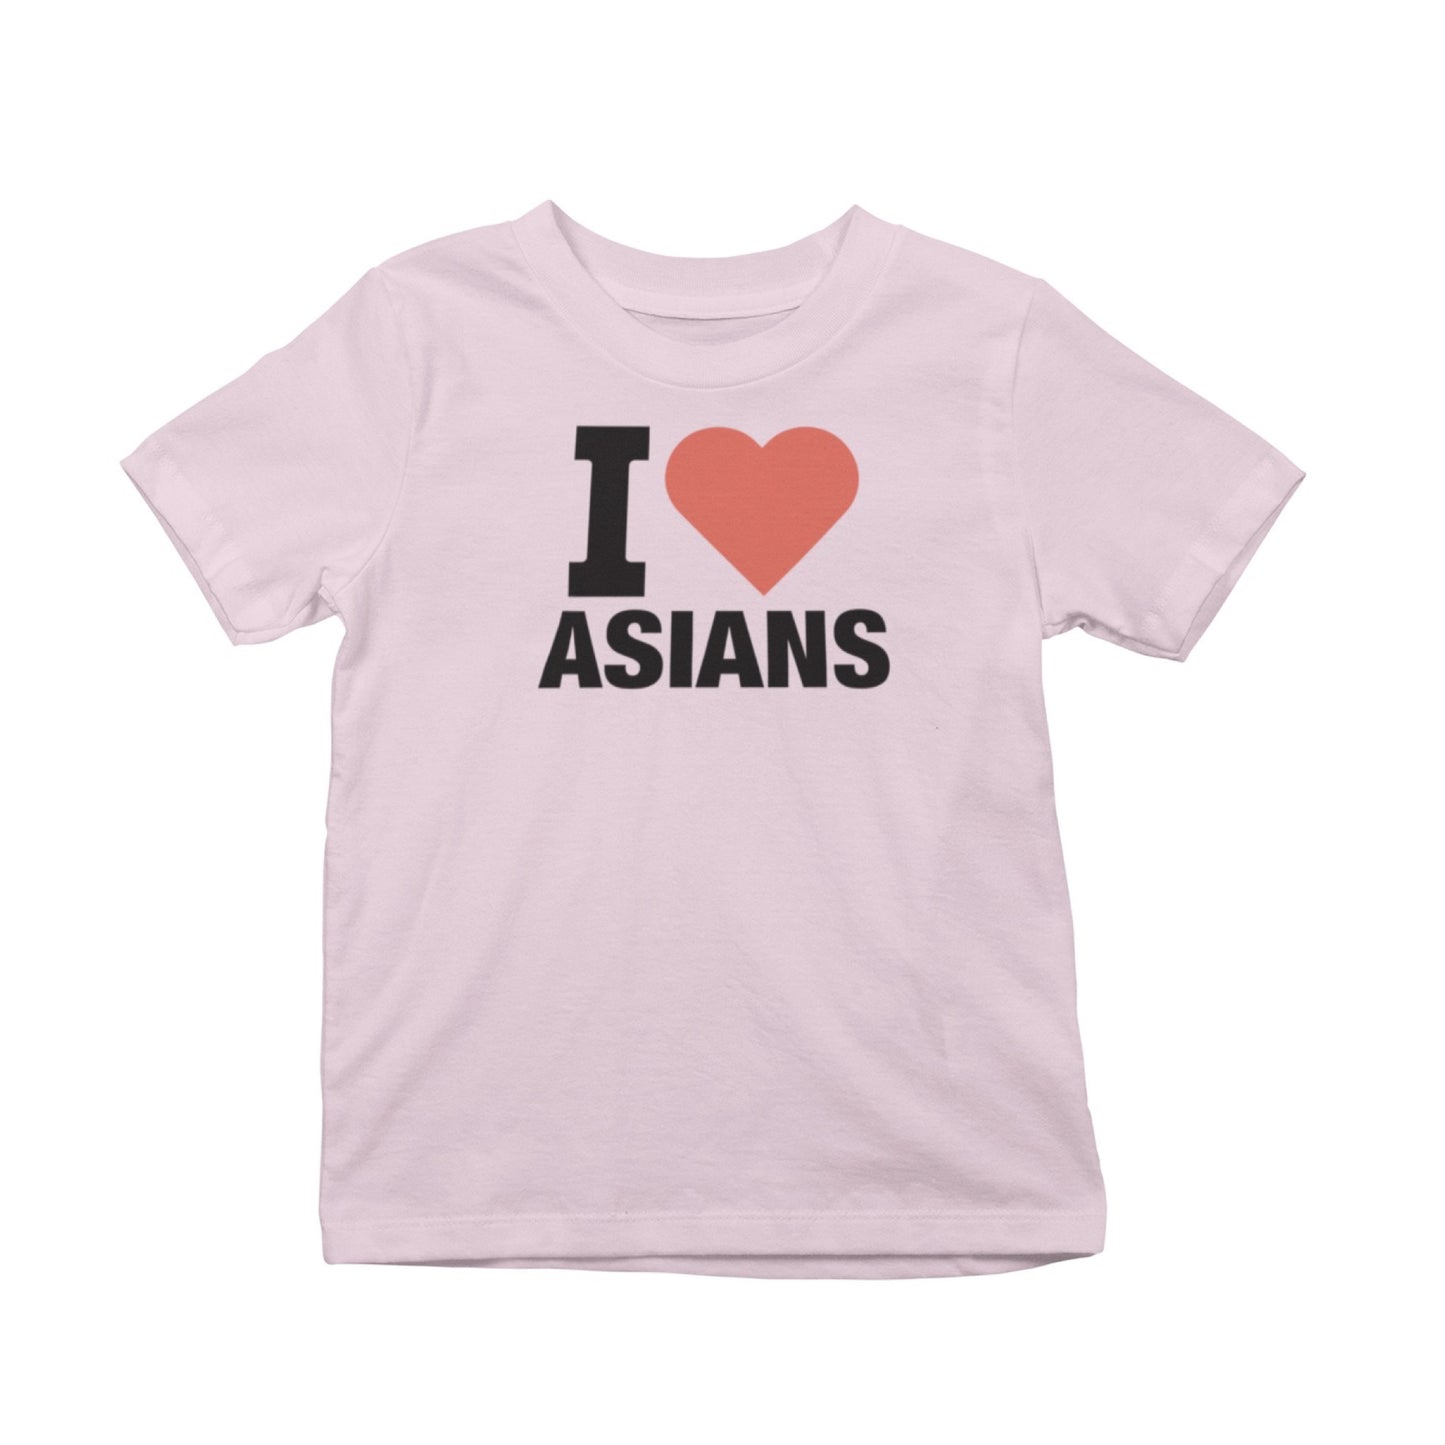 I Heart Asians T-Shirt